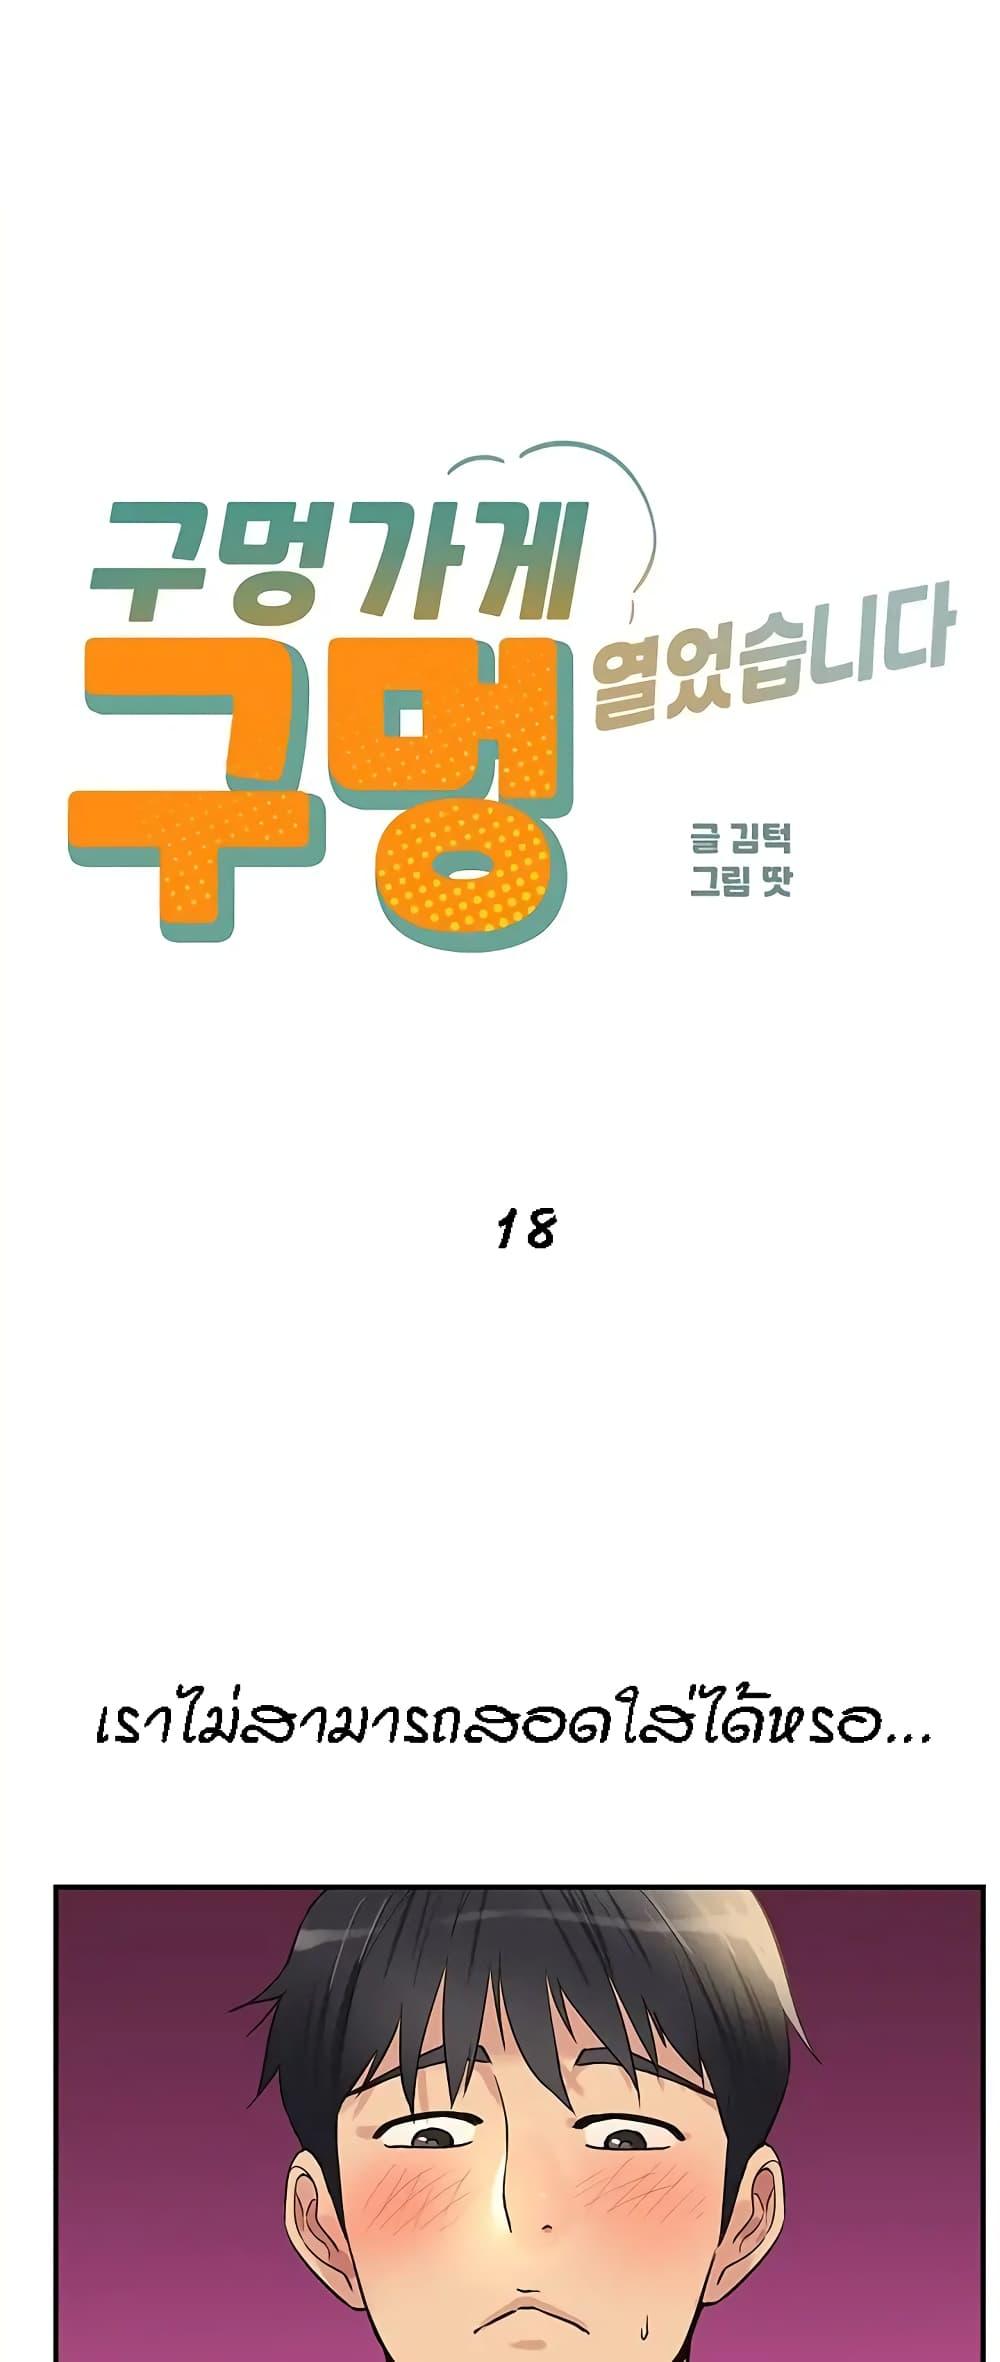 Doujin-Lc- อ่าน โดจิน มังฮวา เกาหลี ญี่ปุ่น จีน แปลไทย Glory Hole ตอนที่ 1 2 3 4 5 6 7 8 9 10 11 12 13 14 ฟรี ไม่มีโฆษณา อ่าน โดจิน Manhwa เกาหลี ญี่ปุ่น จีน เรามีครบ คัดมาให้เน้นๆ โดจิน 18+ รับประกันความฟินโดย  Doujin Lc